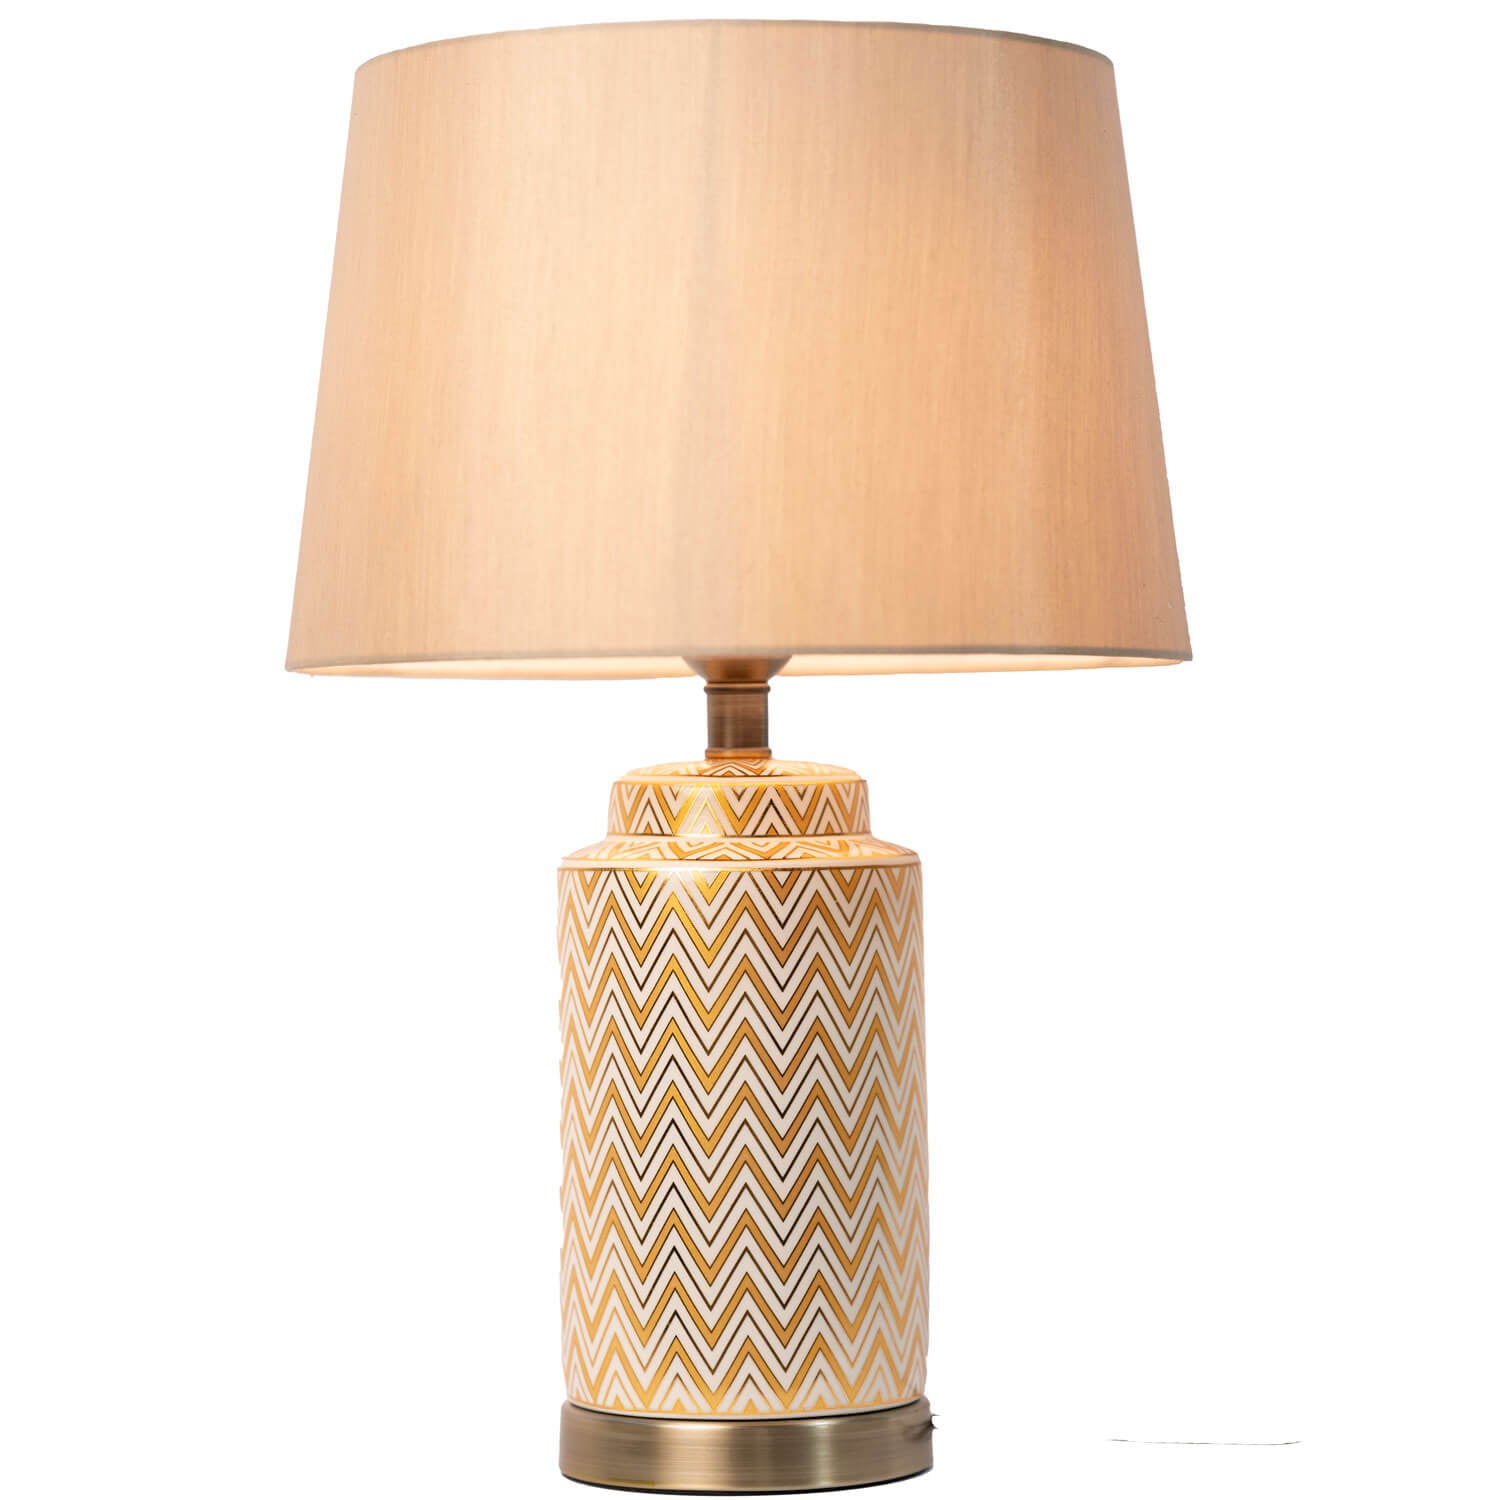 Tara Lane Aztec Table Lamp - Cream / Gold 1 Shaws Department Stores